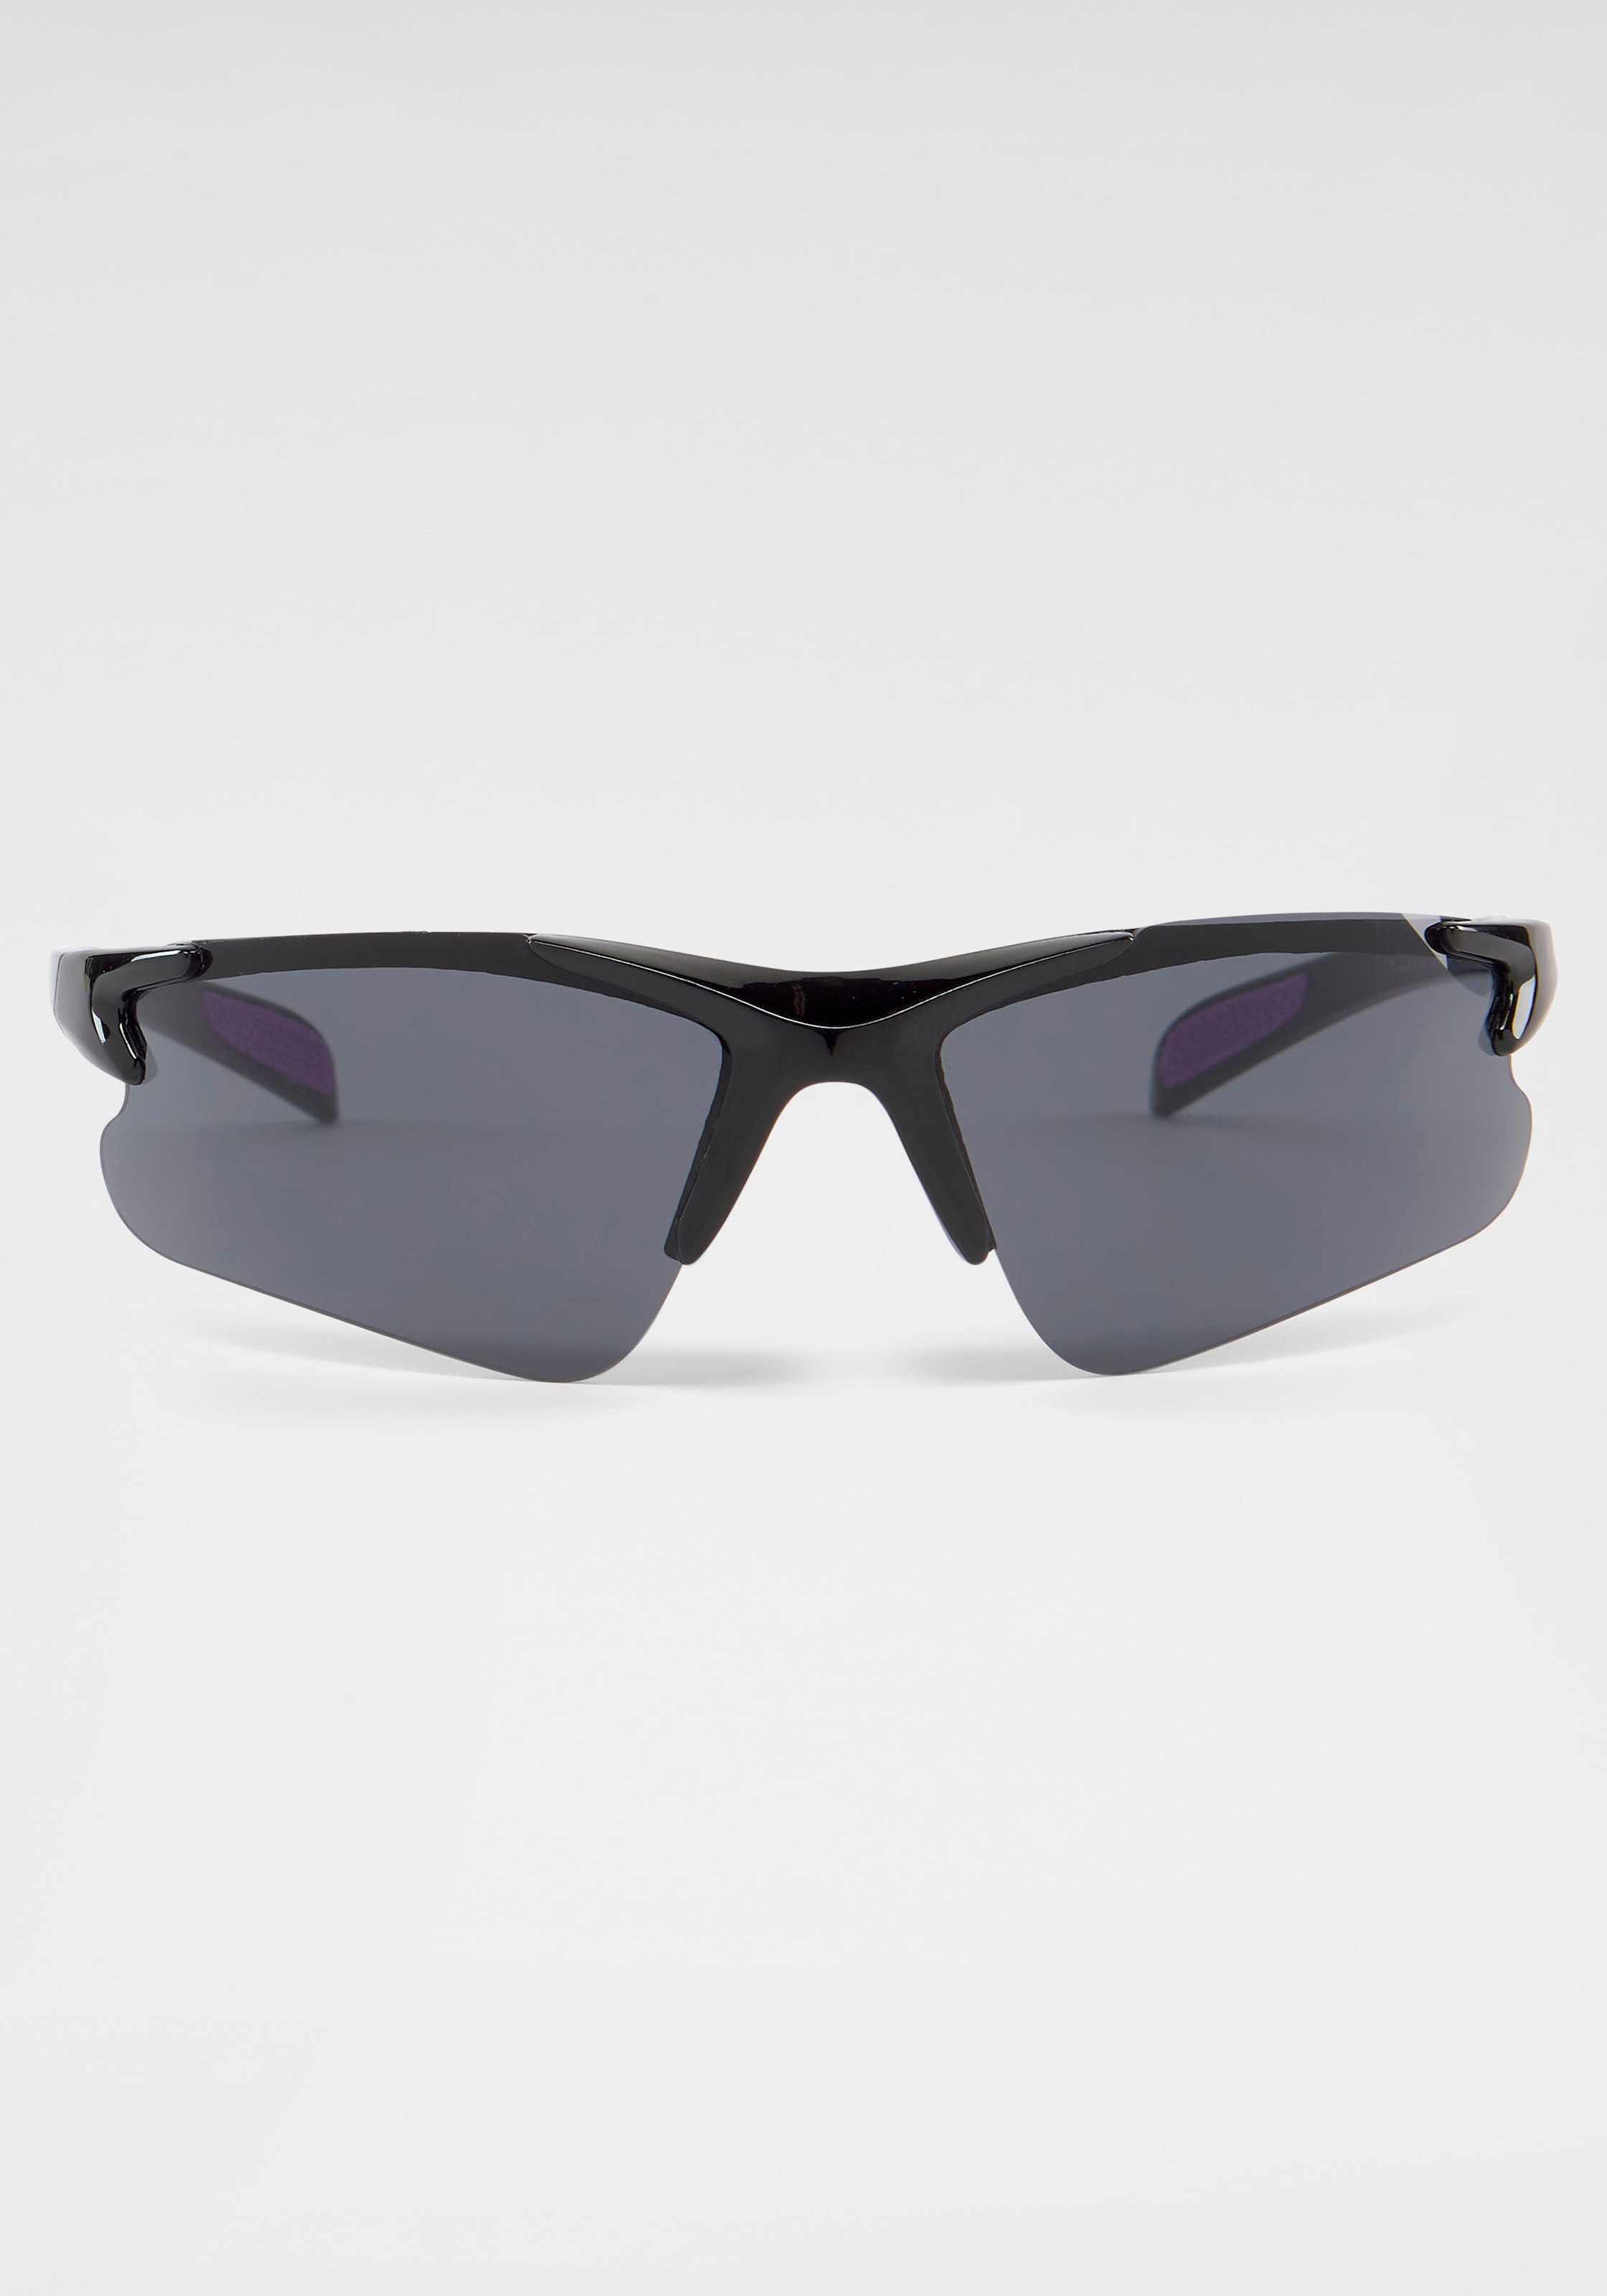 Eyewear online Sonnenbrille | PRIMETTA kaufen BAUR